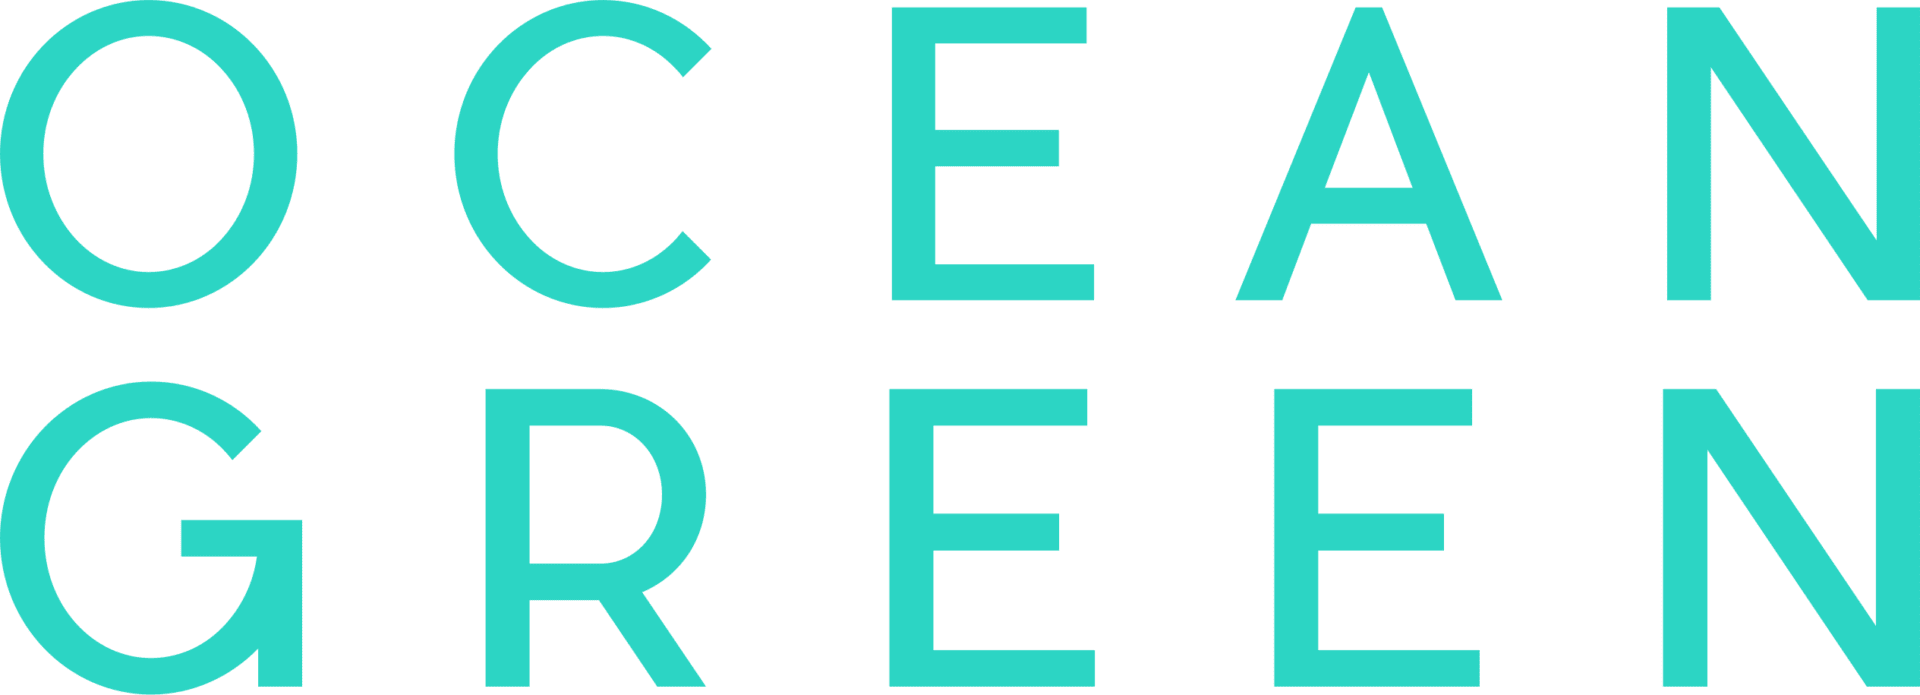 ocean green text only logo